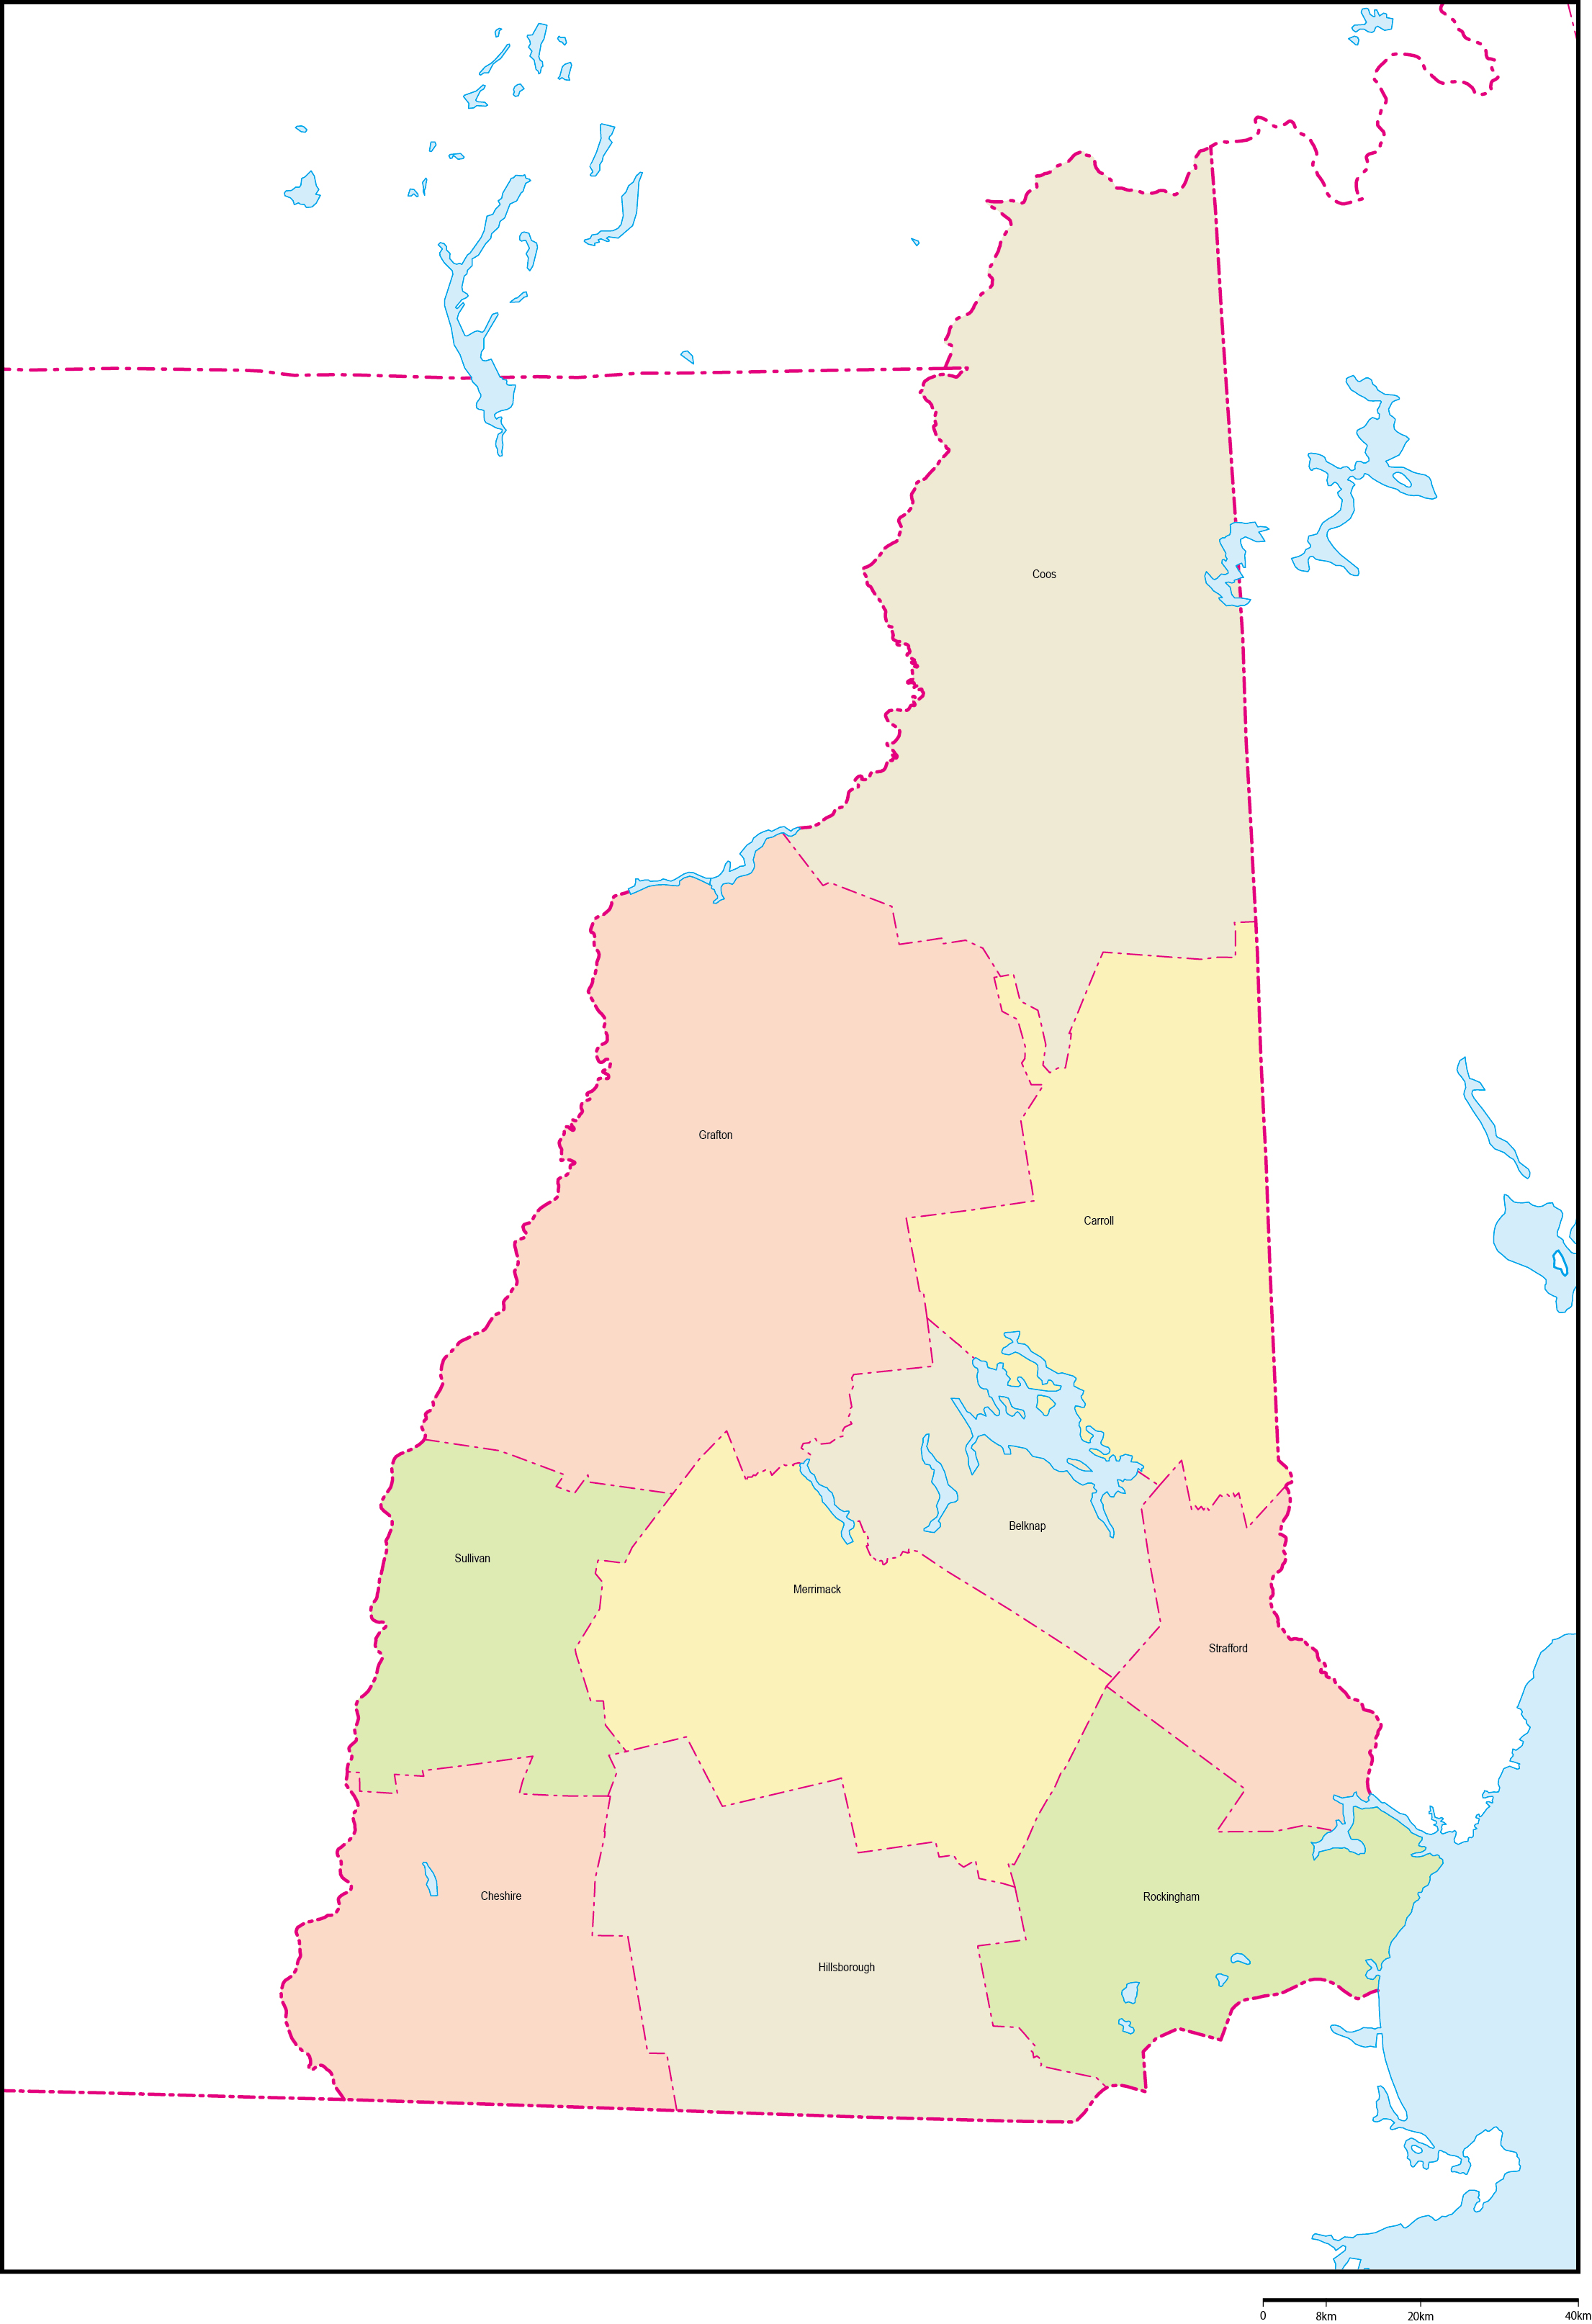 ニューハンプシャー州郡色分け地図郡名あり(英語)フリーデータの画像